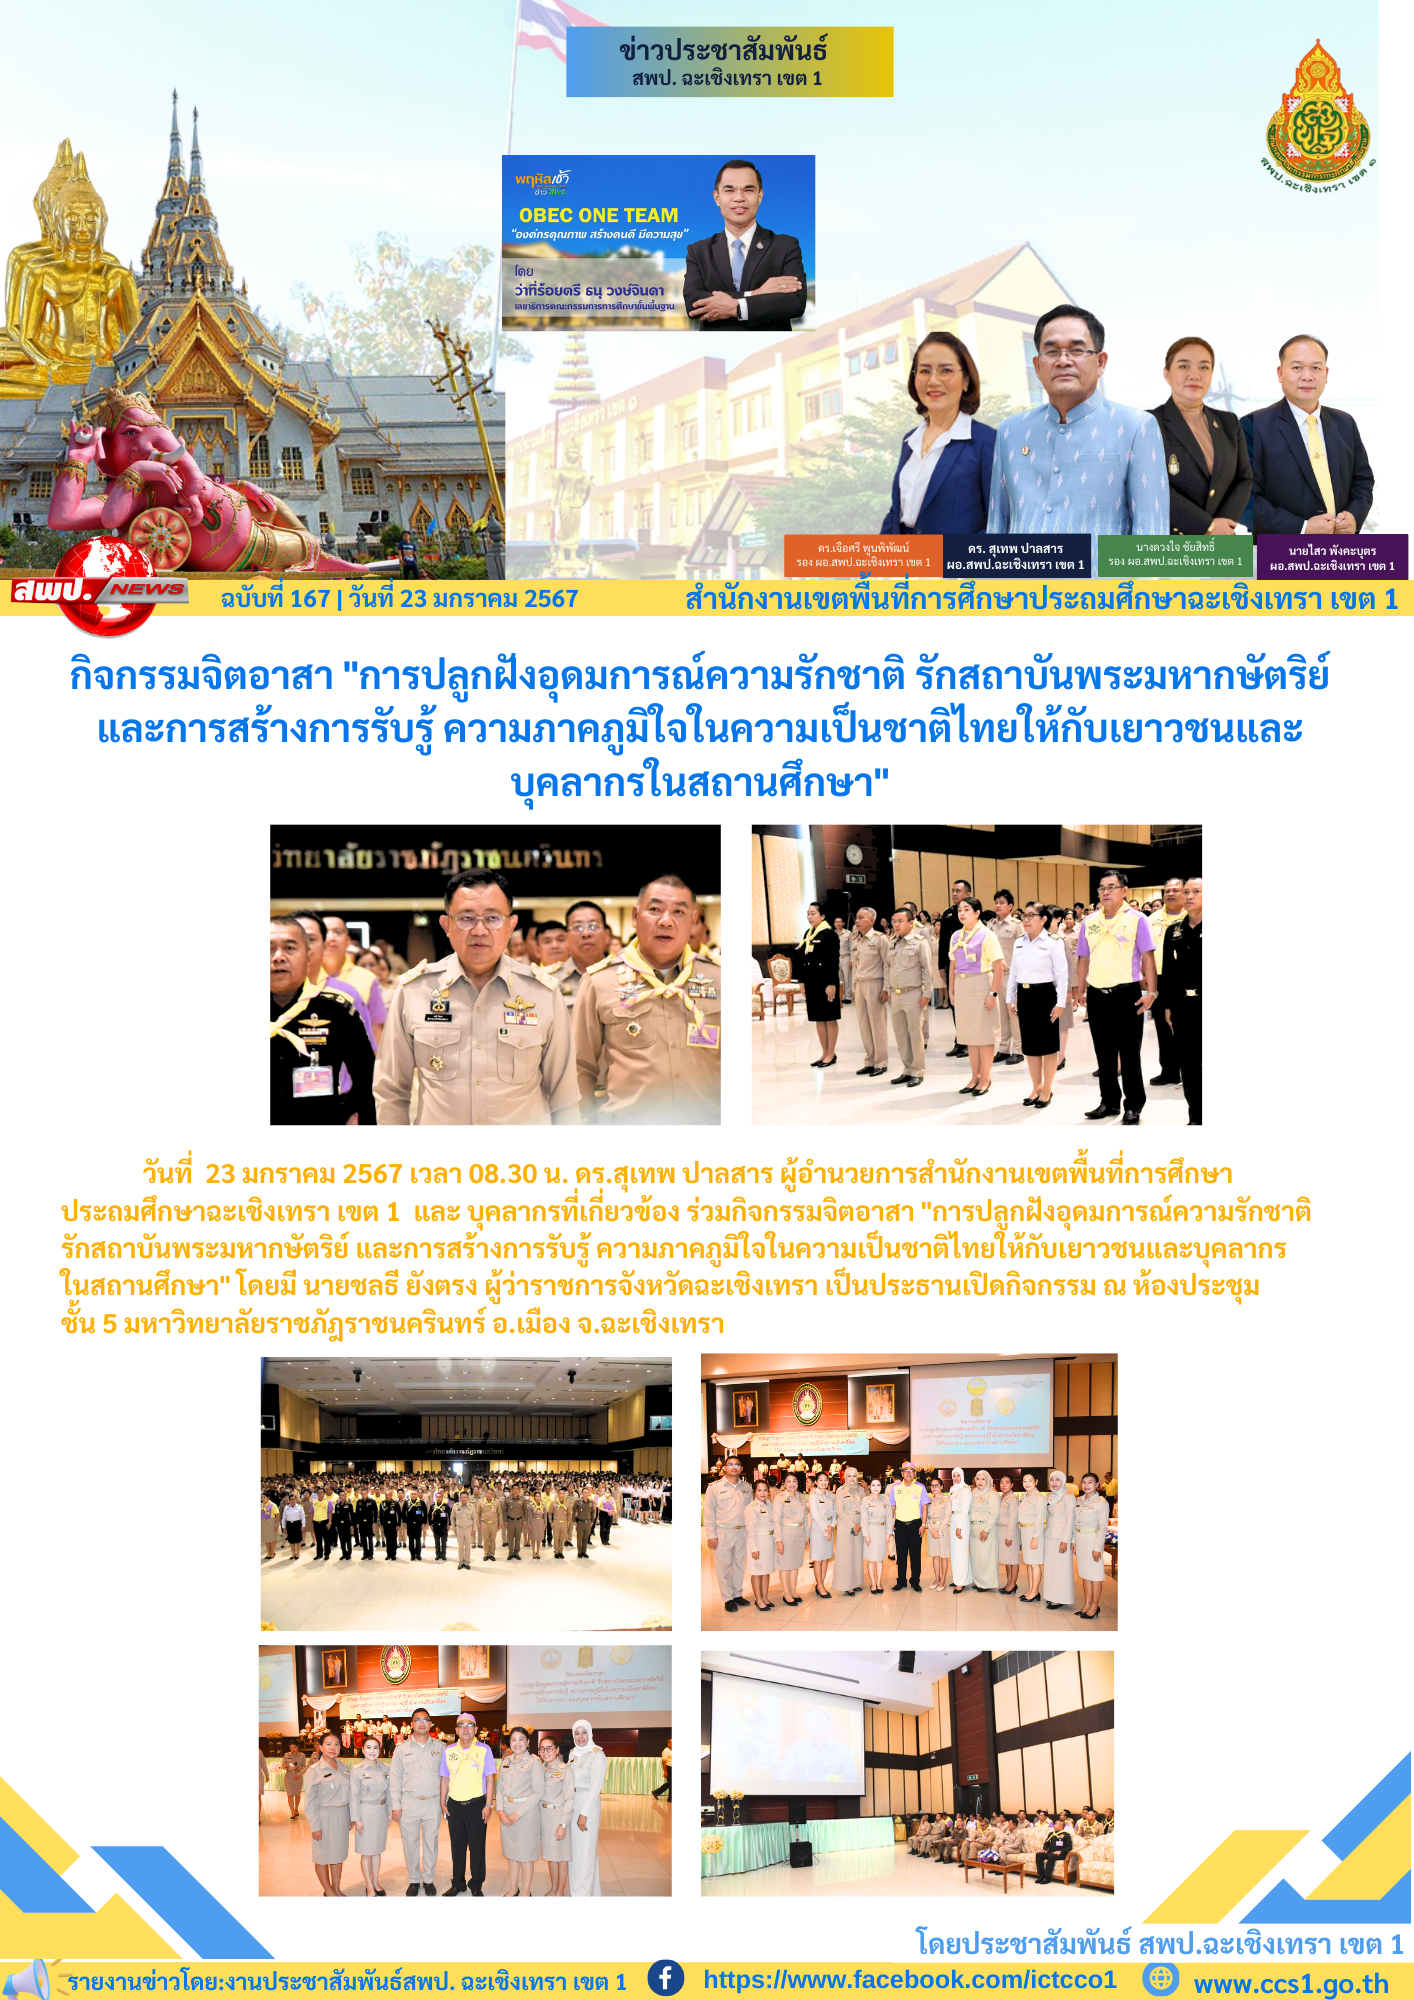 กิจกรรมจิตอาสา "การปลูกฝังอุดมการณ์ความรักชาติ รักสถาบันพระมหากษัตริย์ และการสร้างการรับรู้ ความภาคภูมิใจในความเป็นชาติไทยให้กับเยาวชนและบุคลากรในสถานศึกษา"